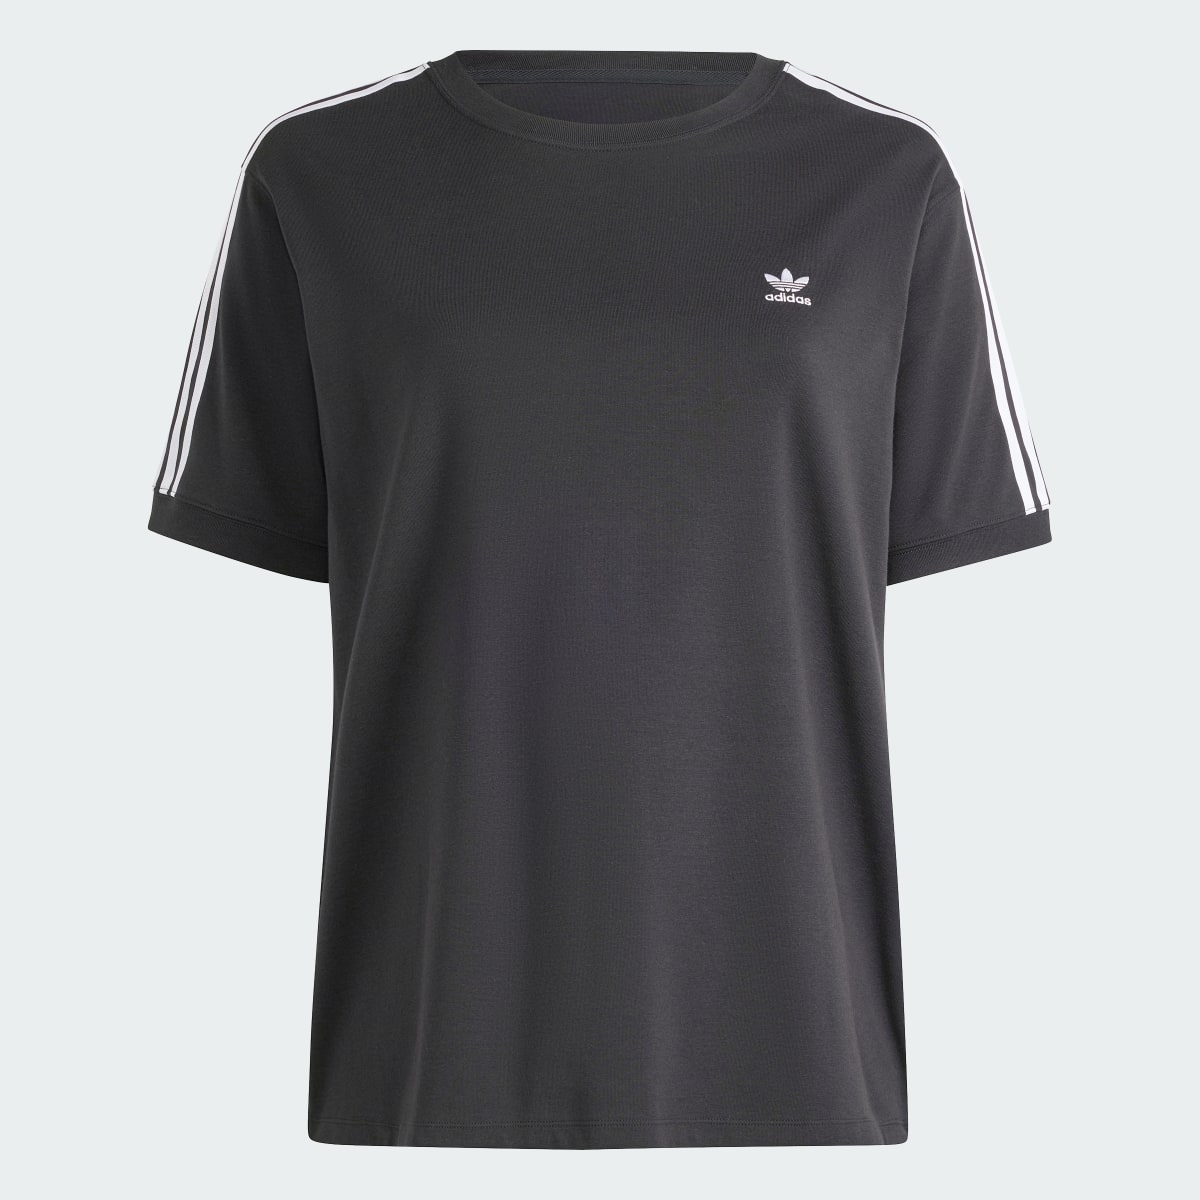 Adidas 3-Streifen Baby T-Shirt – Große Größen. 5